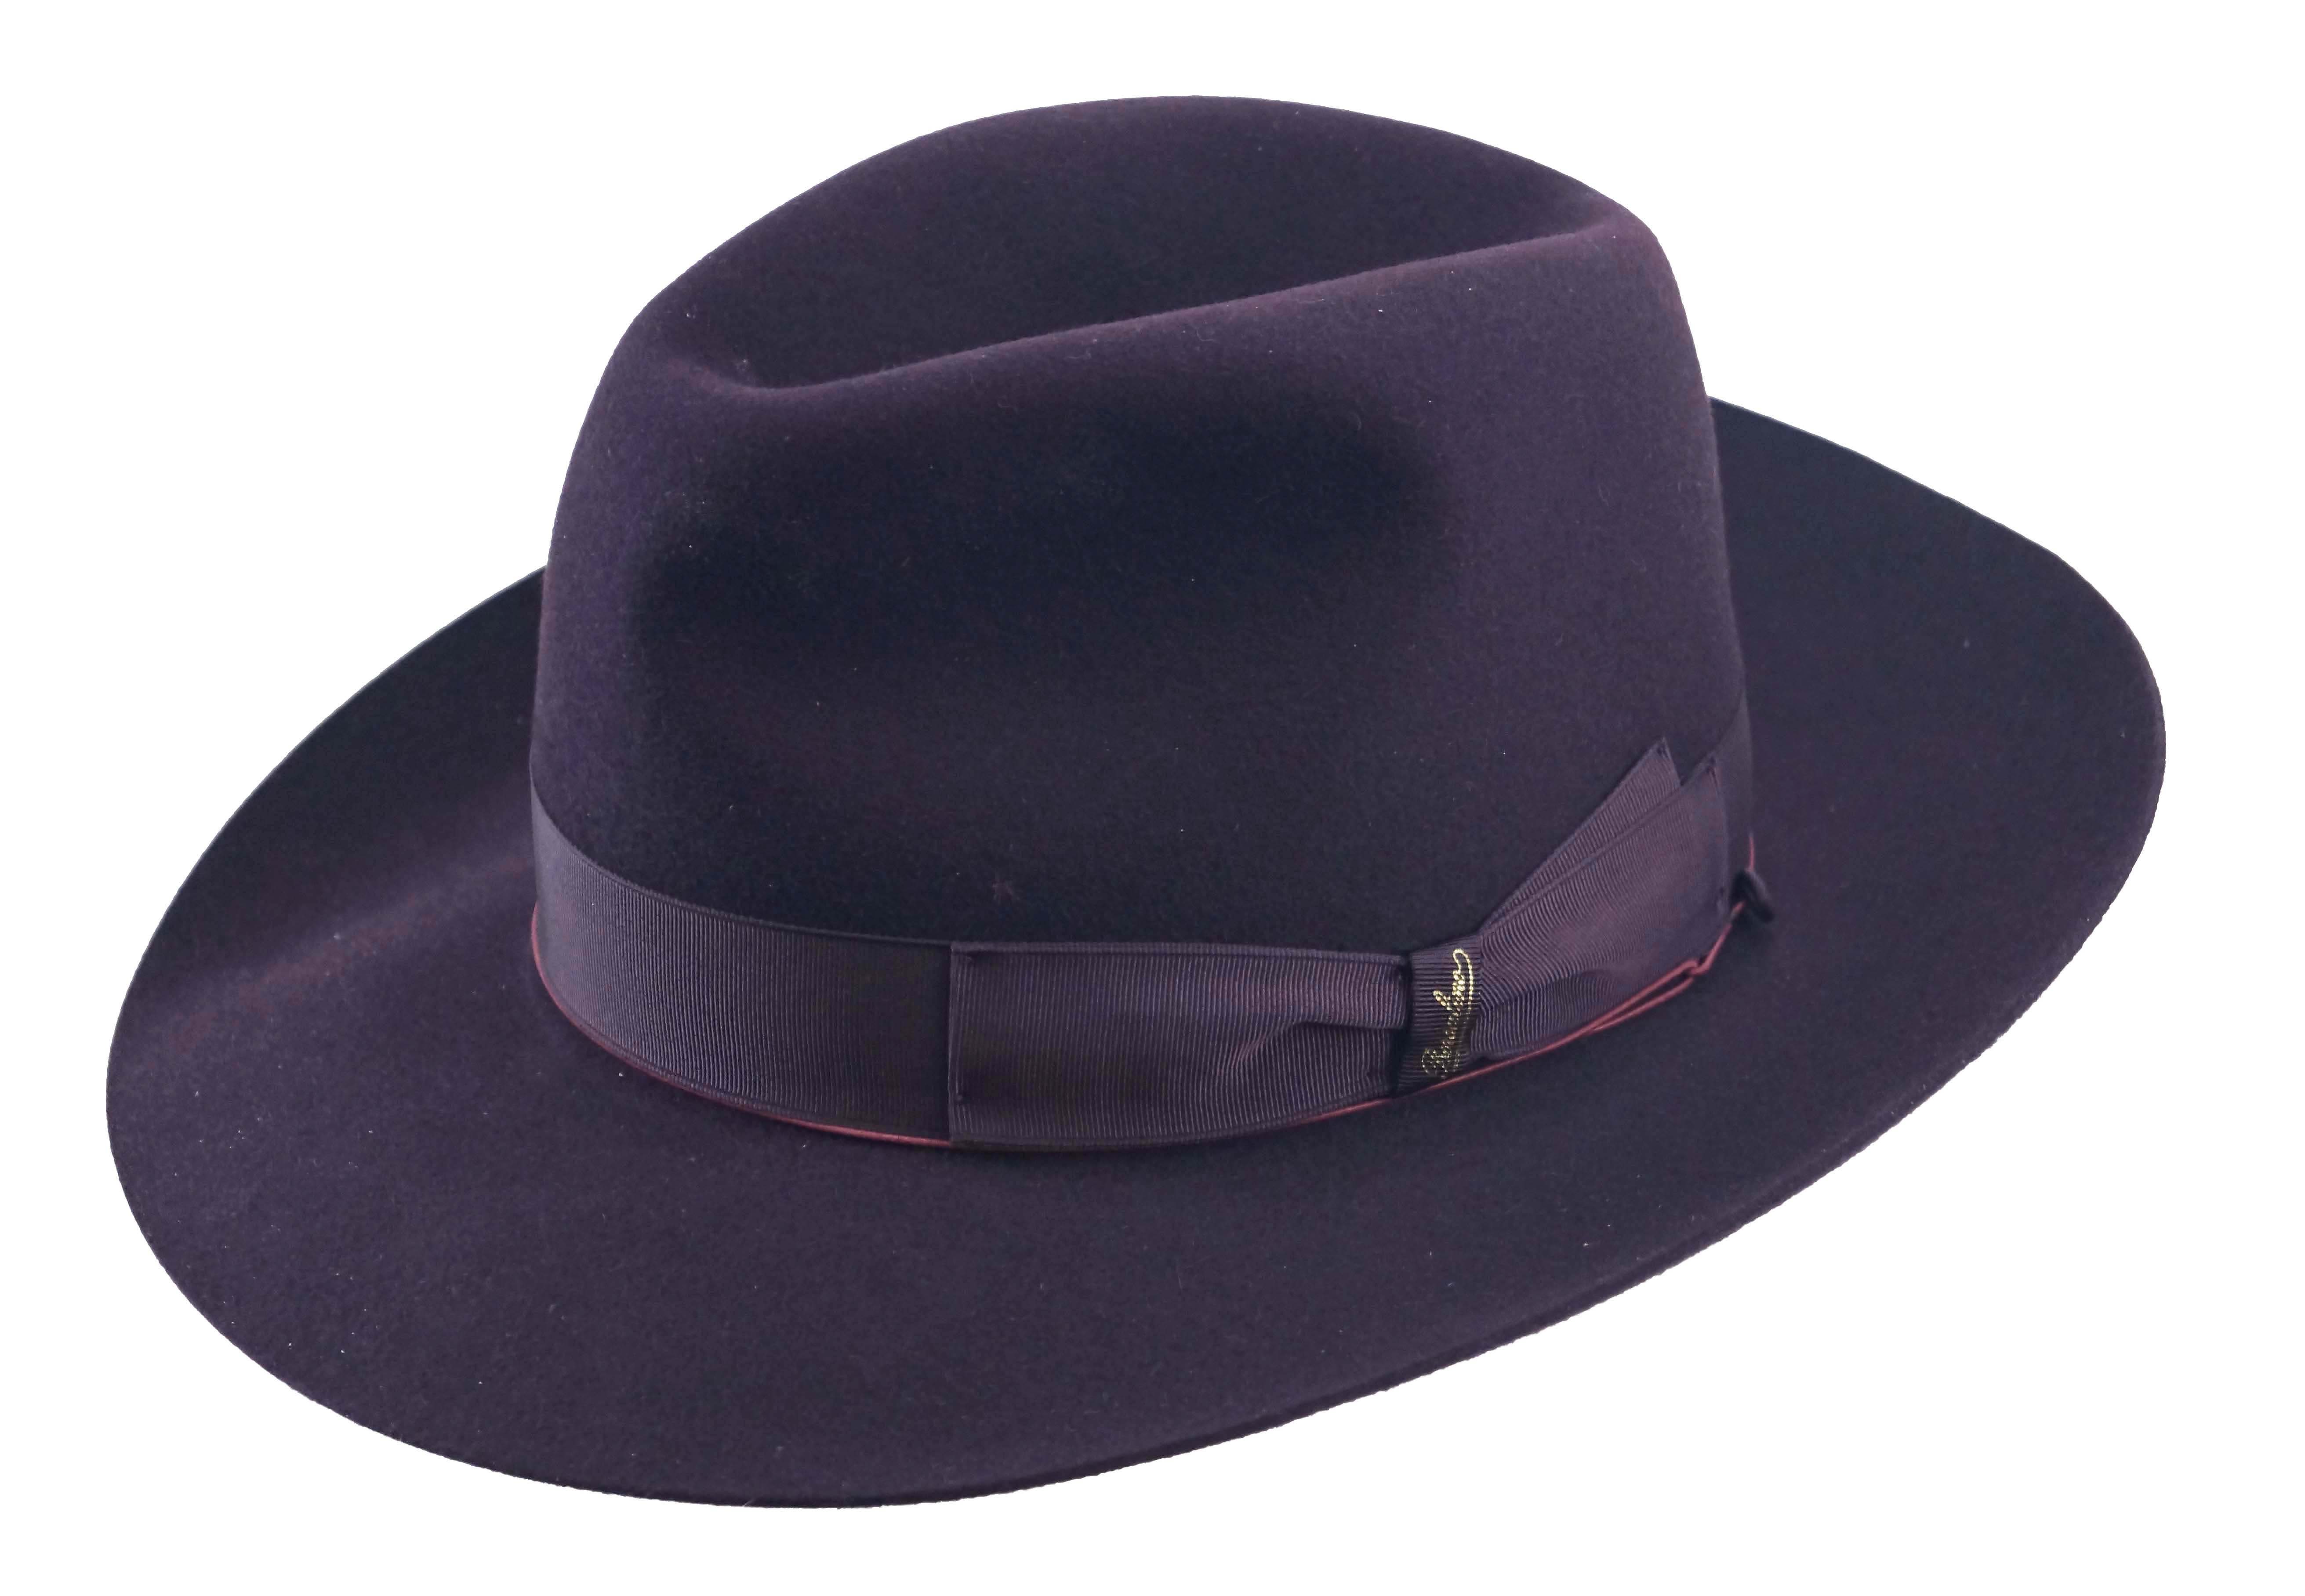 Borsalino Grande Classico vilt fedora hoed in Qualita Superiore, in paars